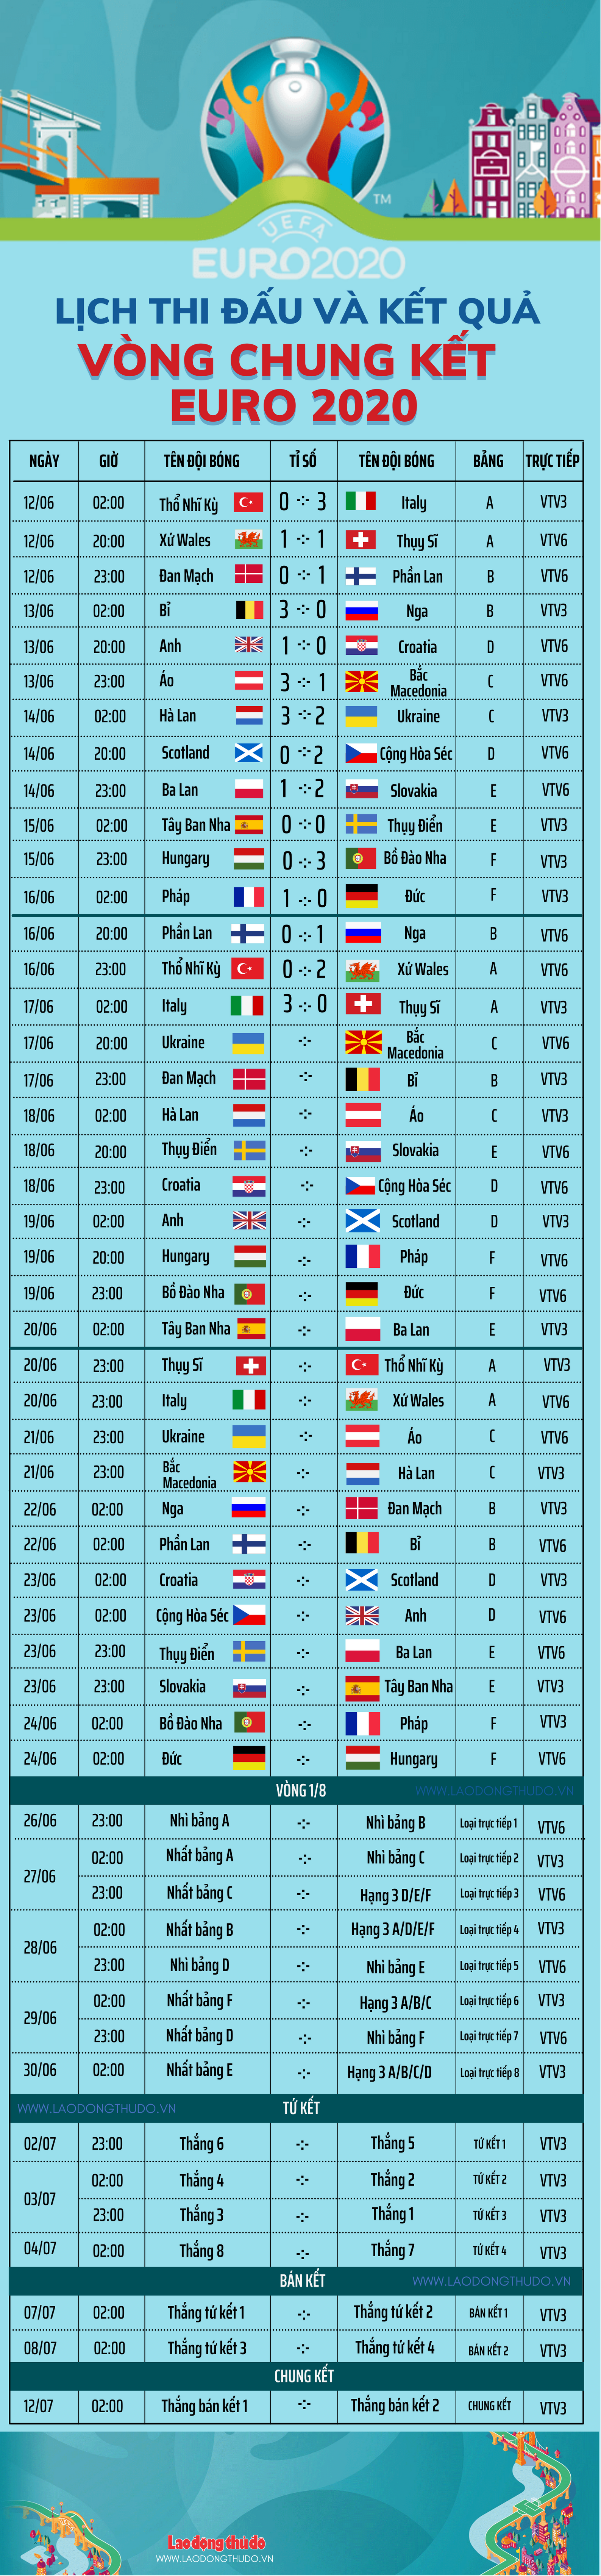 Infographics Chi tiết các bảng và lịch thi đấu của EURO 2016  Bóng đá   Vietnam VietnamPlus